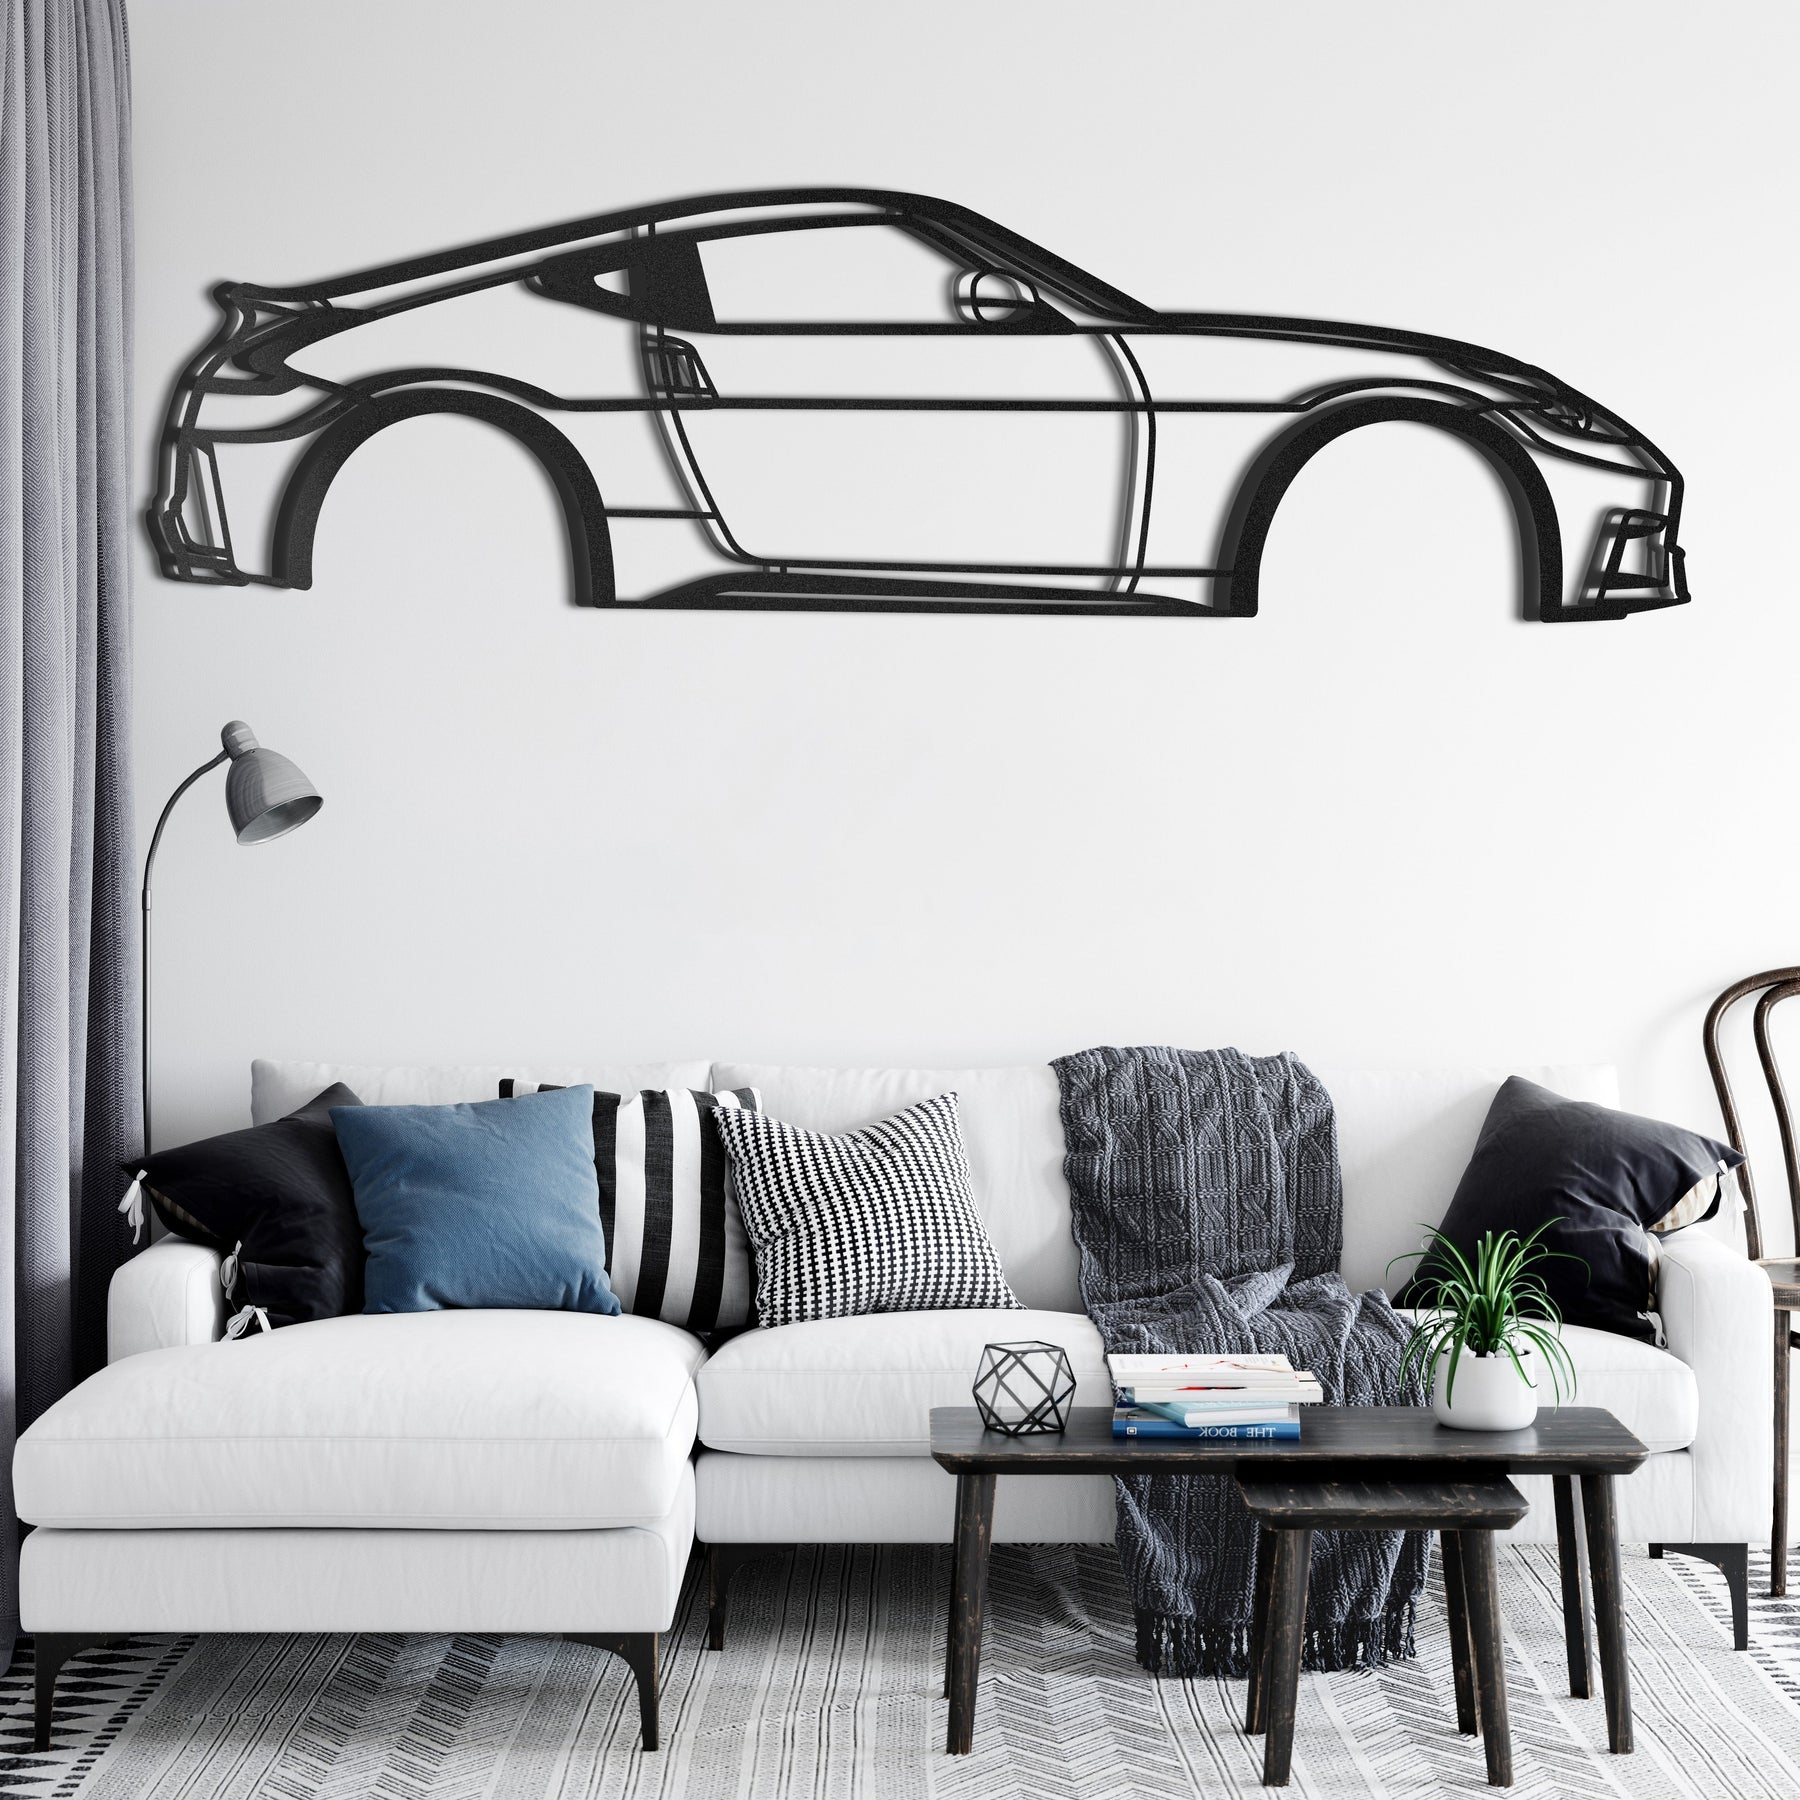 2015 370Z Metal Car Wall Art - MT0519